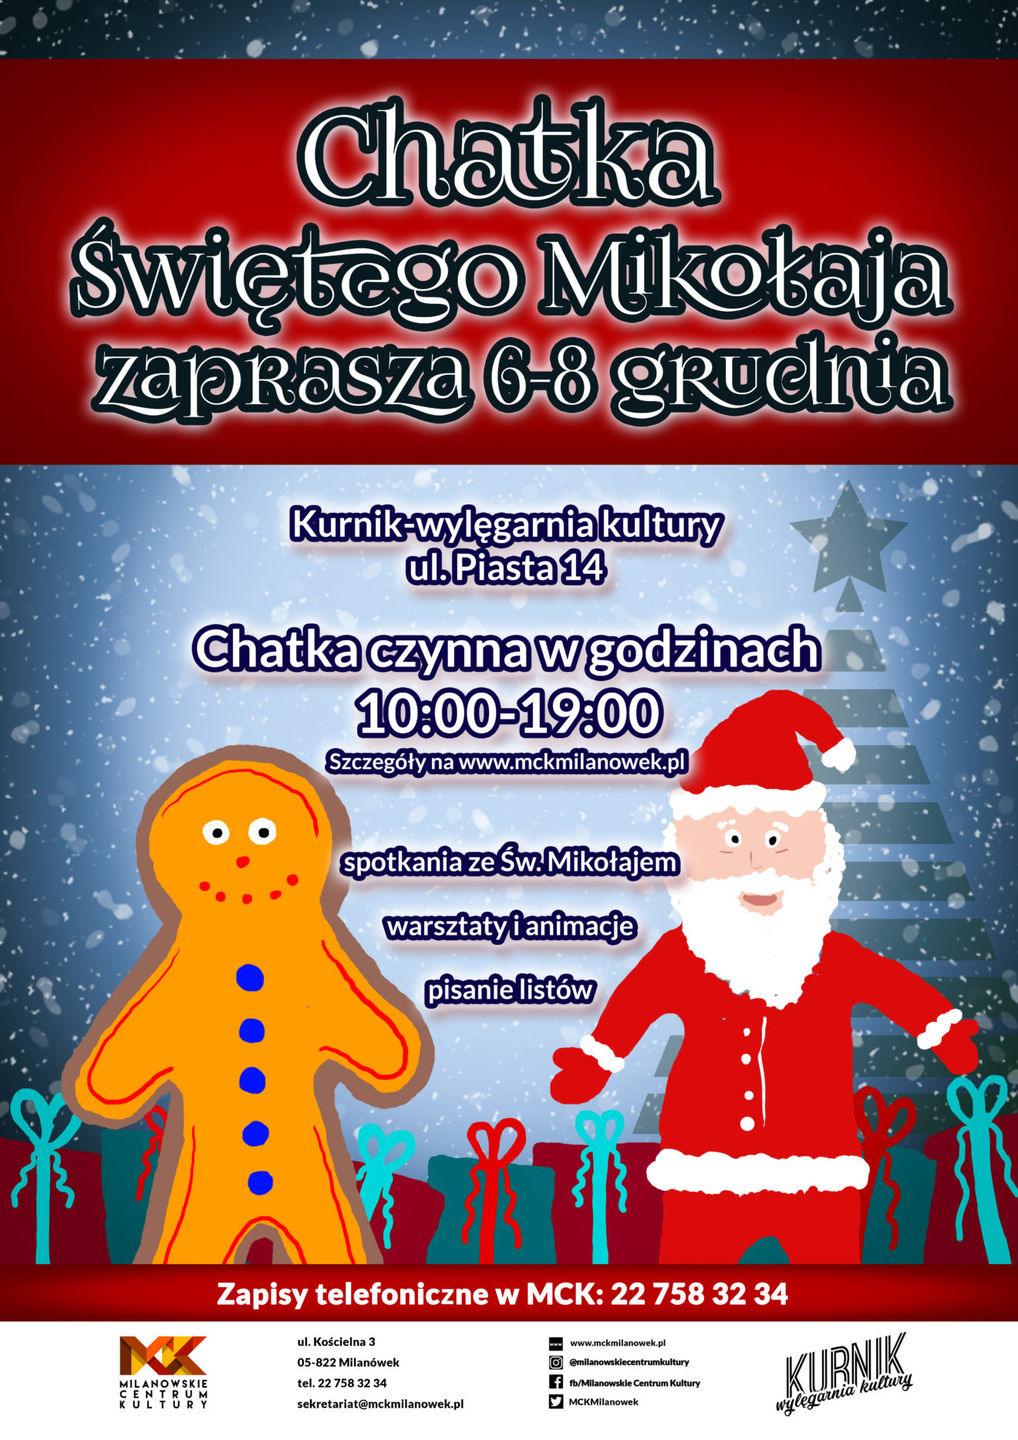 Plakat "Chatka Świętego Mikołaja"